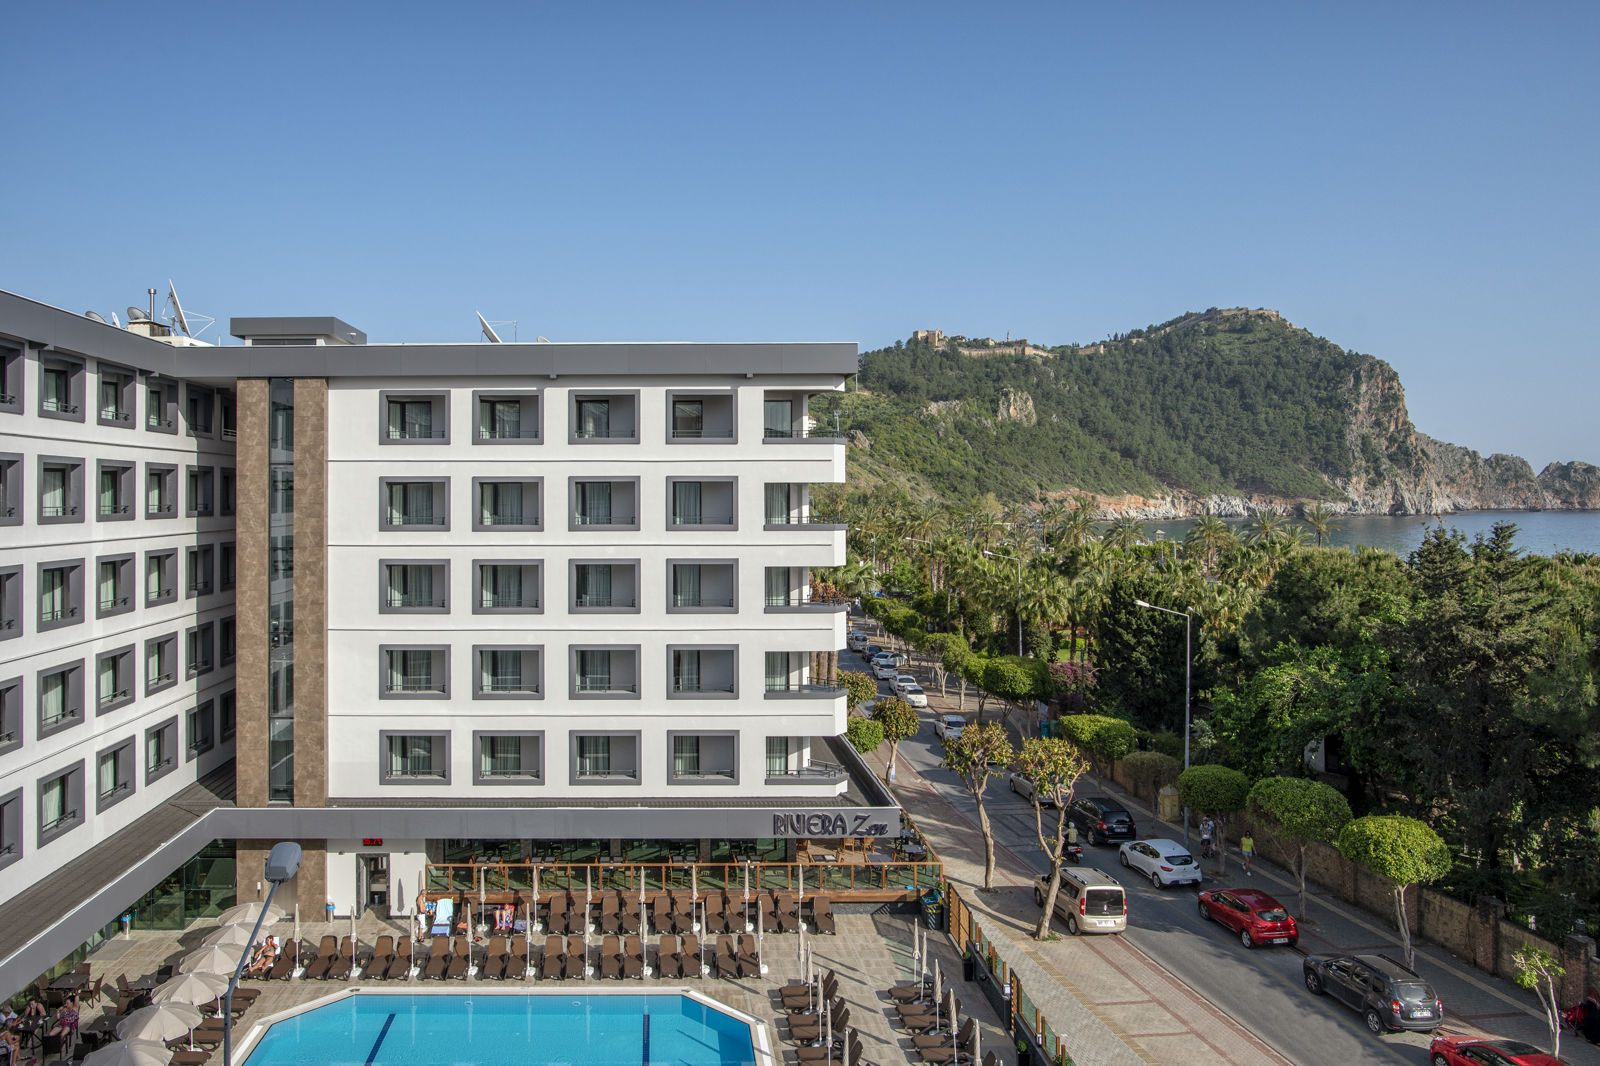 Meer info over Hotel Riviera Zen  bij Corendon